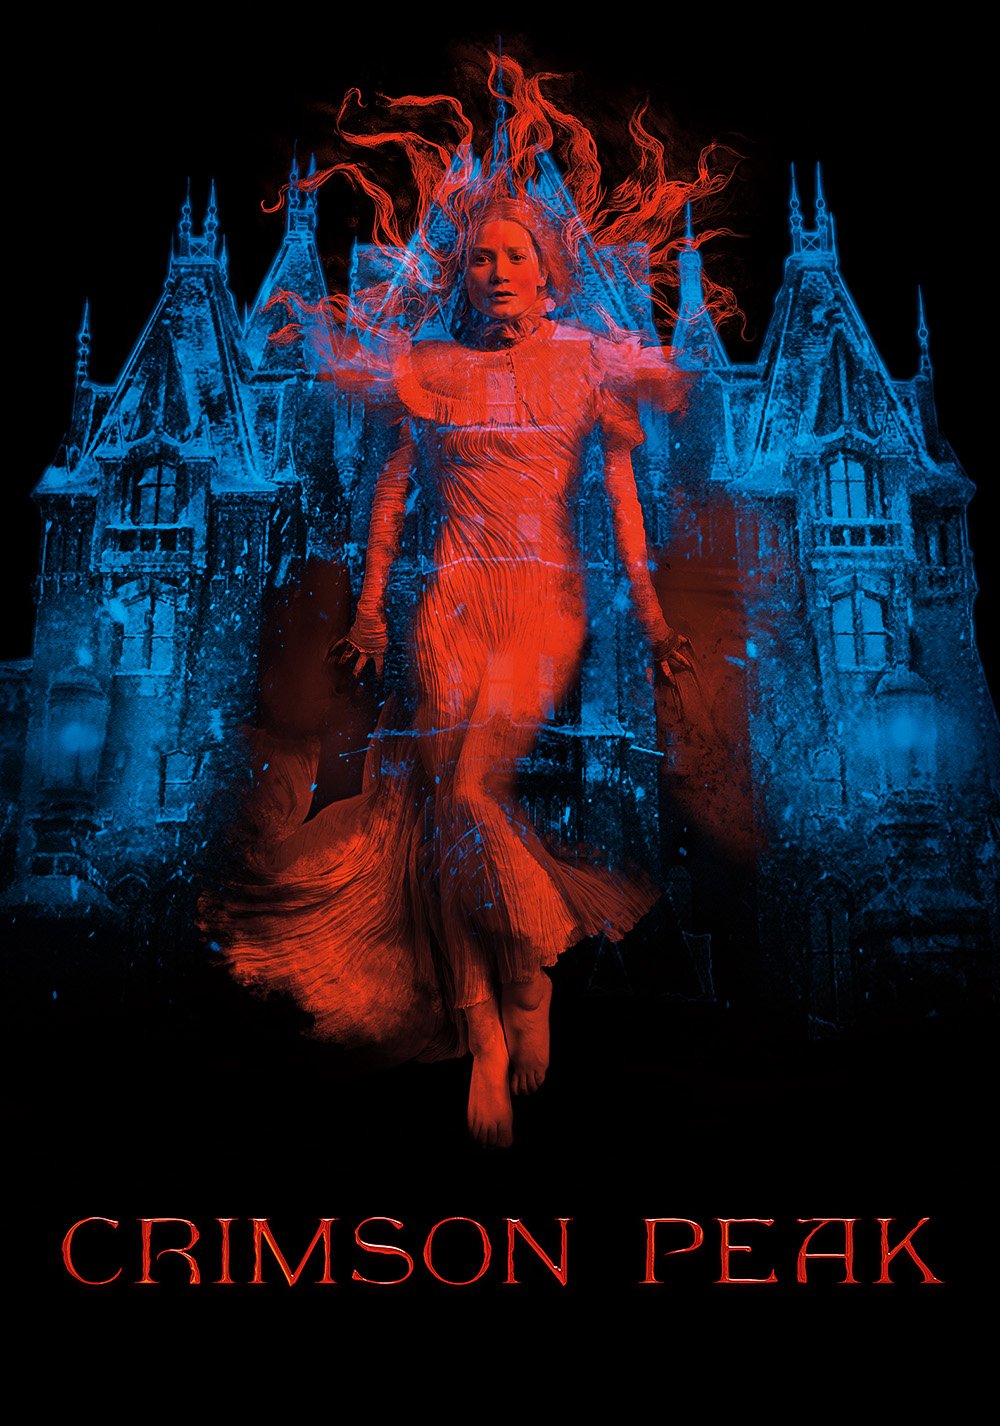 Poster of the movie Crimson Peak